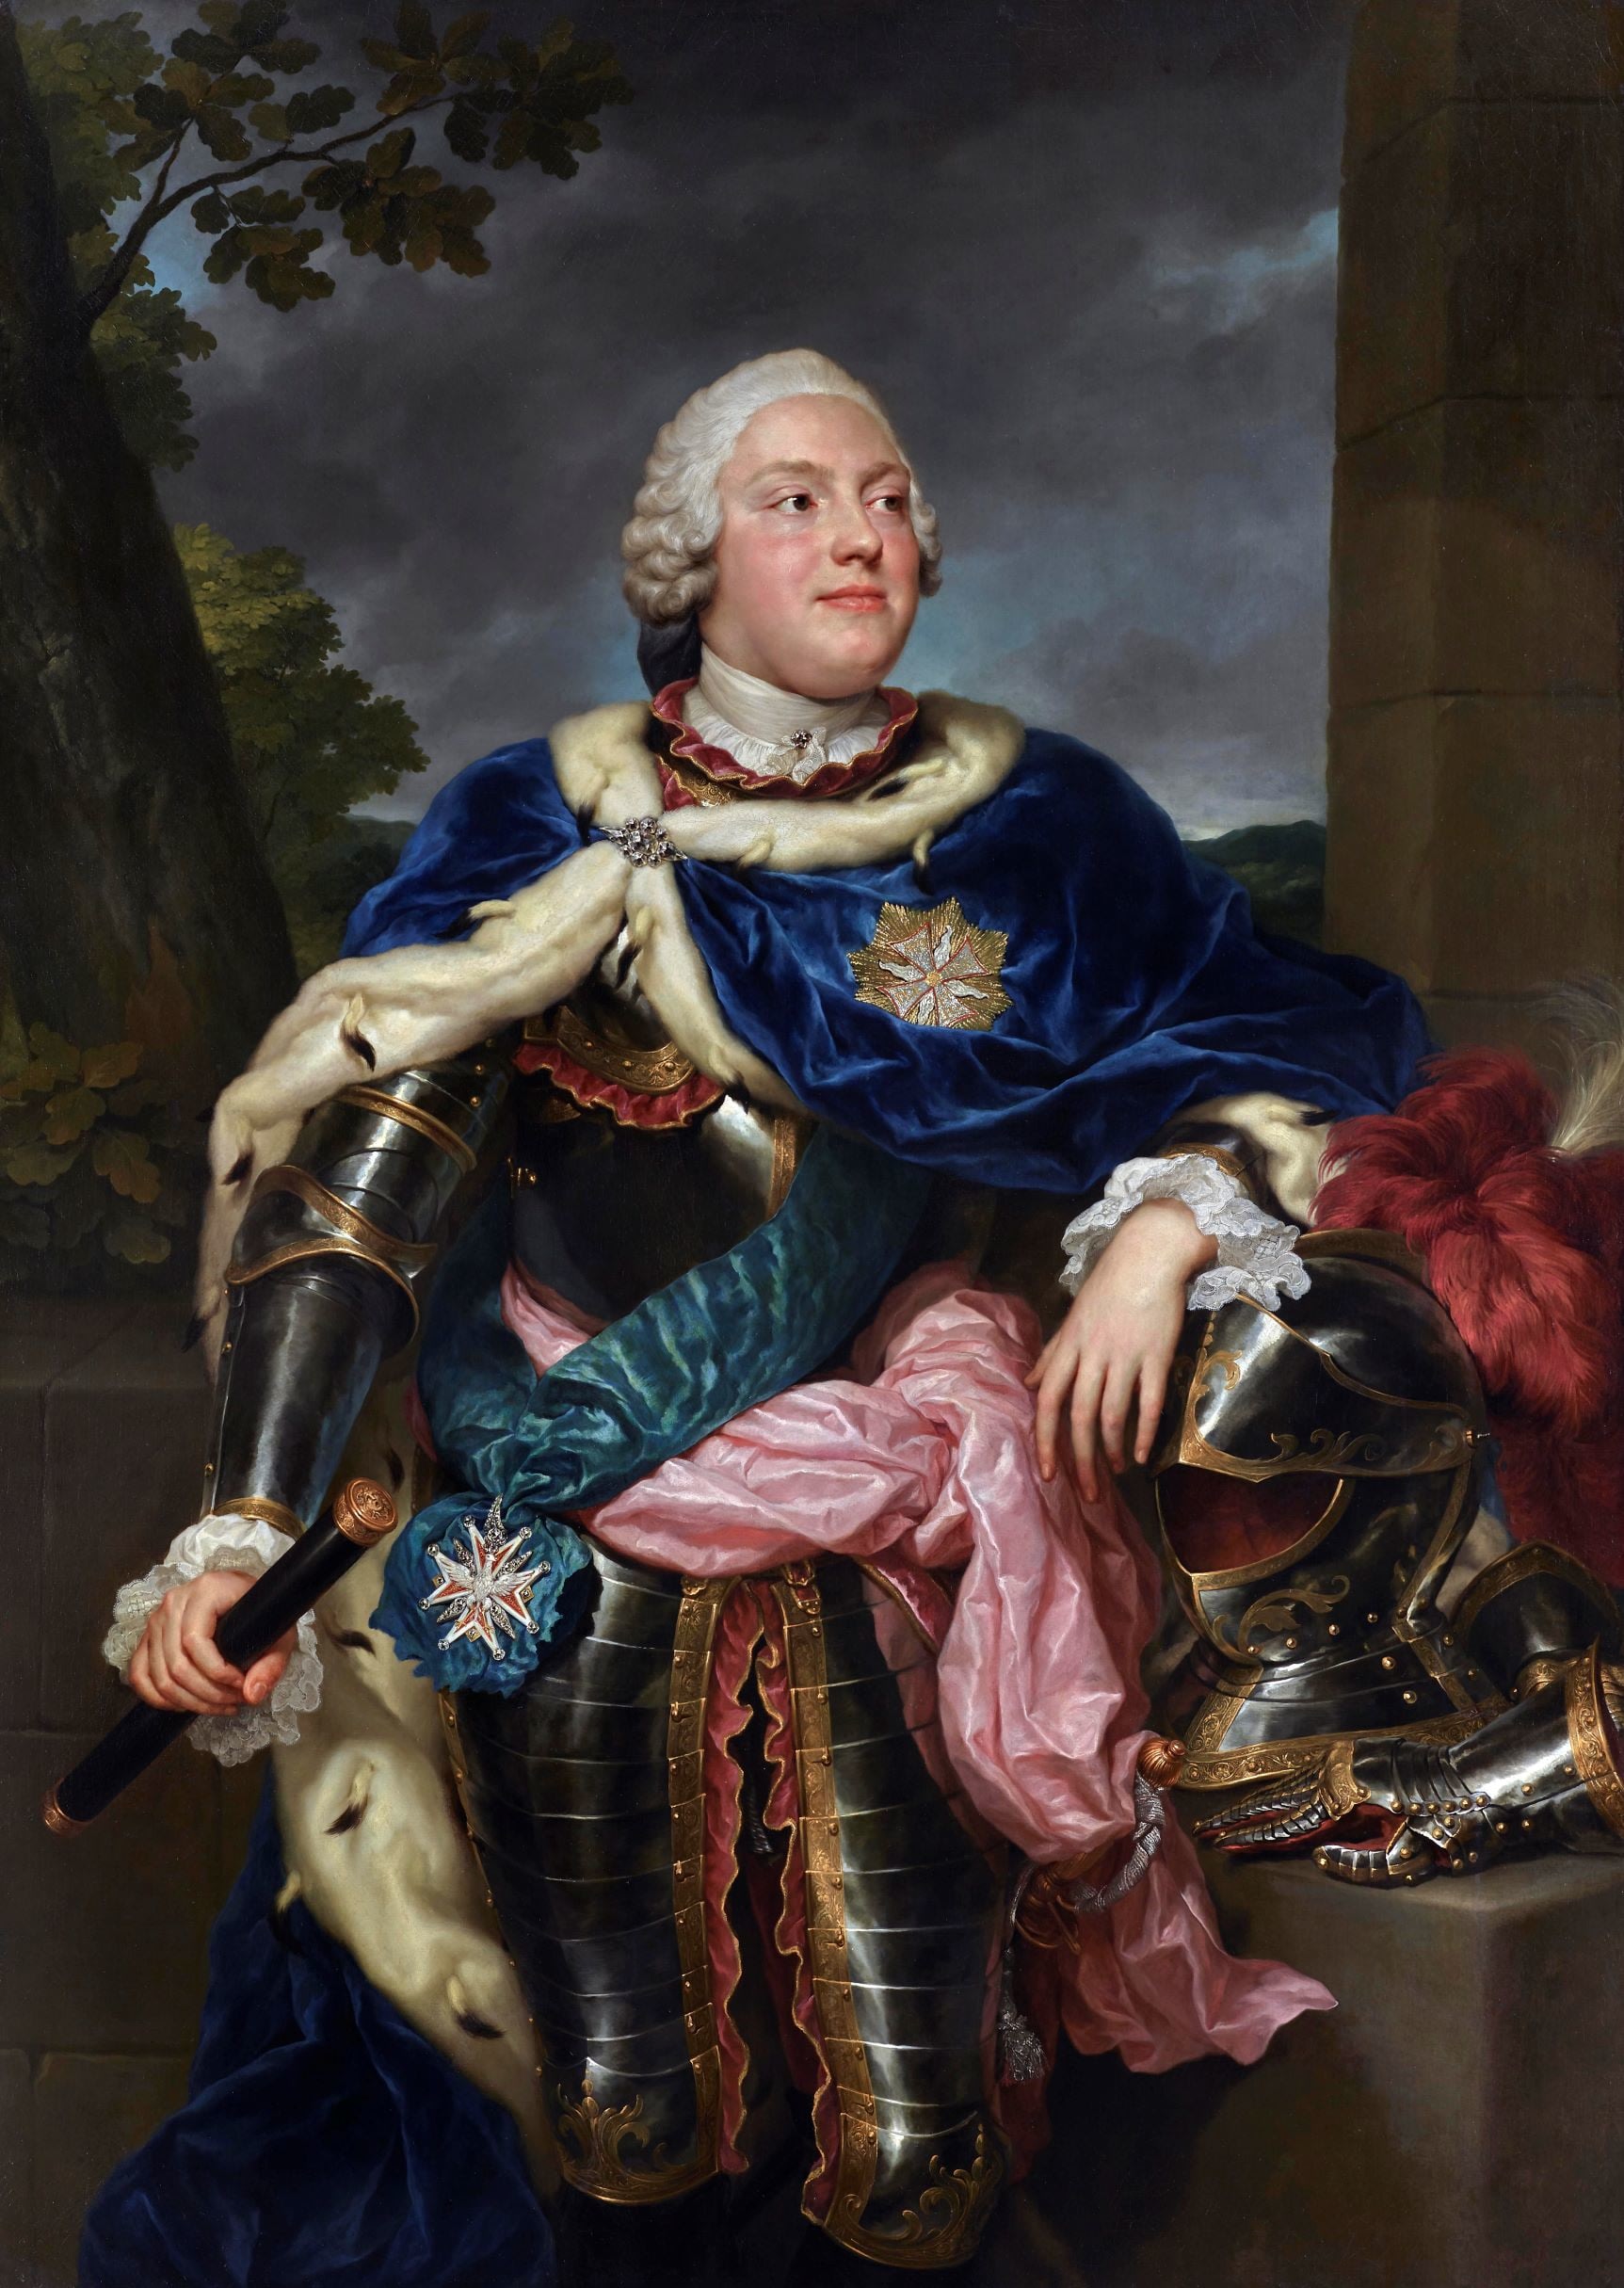 Raphaël Mengs (1728-1779), Portrait de Friedrich Christian, prince de Saxe (1722-1763) en armure, portant le manteau d’hermine et les insignes de l’Ordre de l’Aigle Blanc, 1751. Huile sur toile, 155,7 x 110,8 cm. Agnews, Londres.